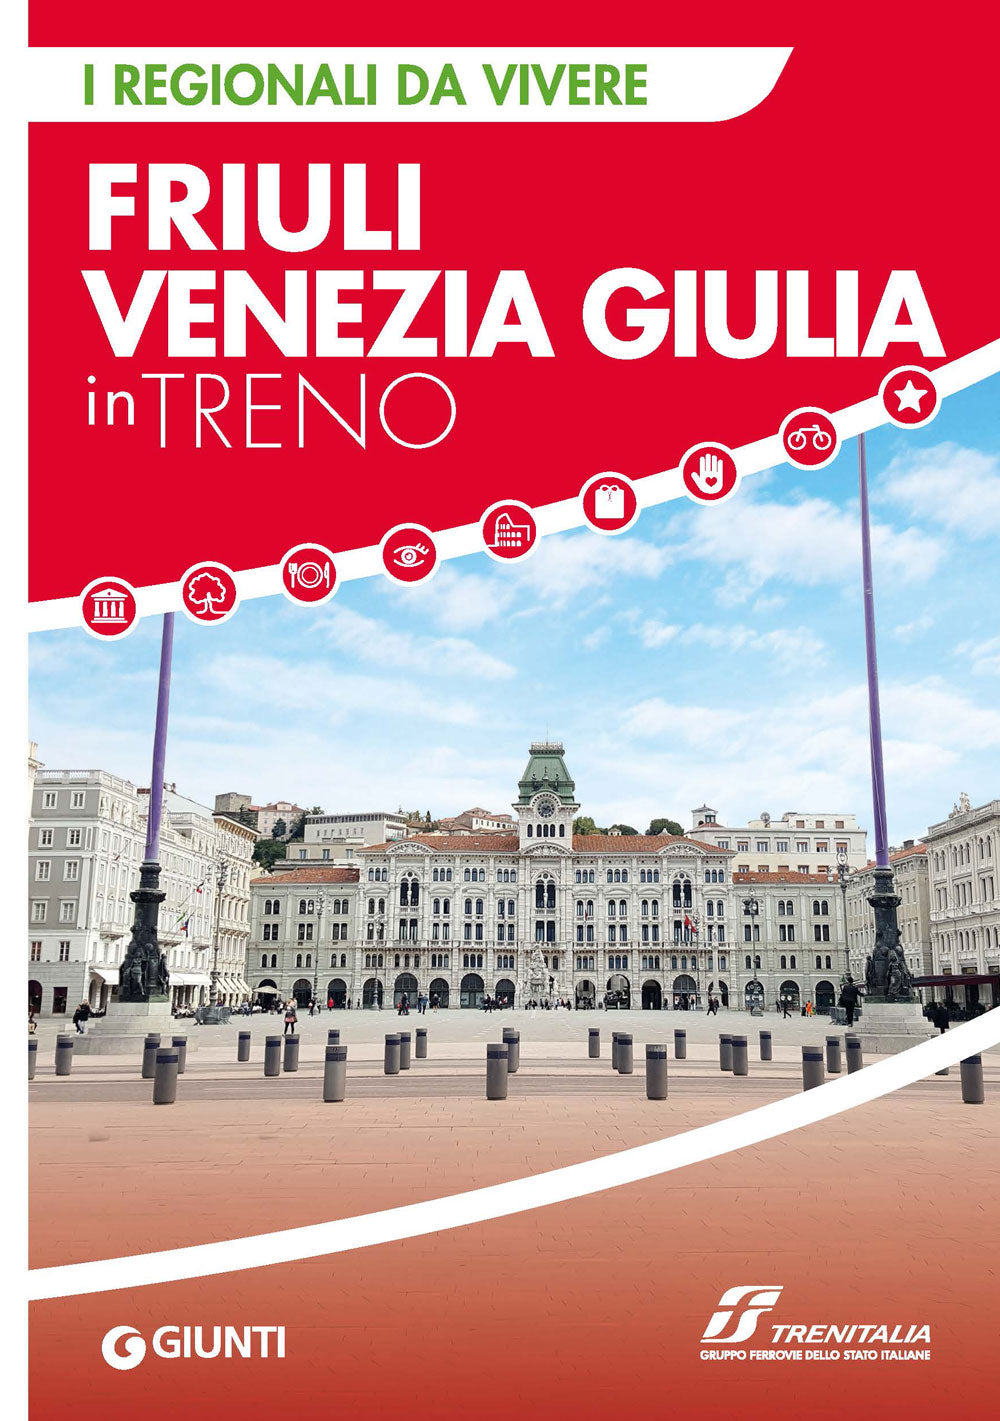 Friuli Venezia Giulia in treno::I regionali da vivere